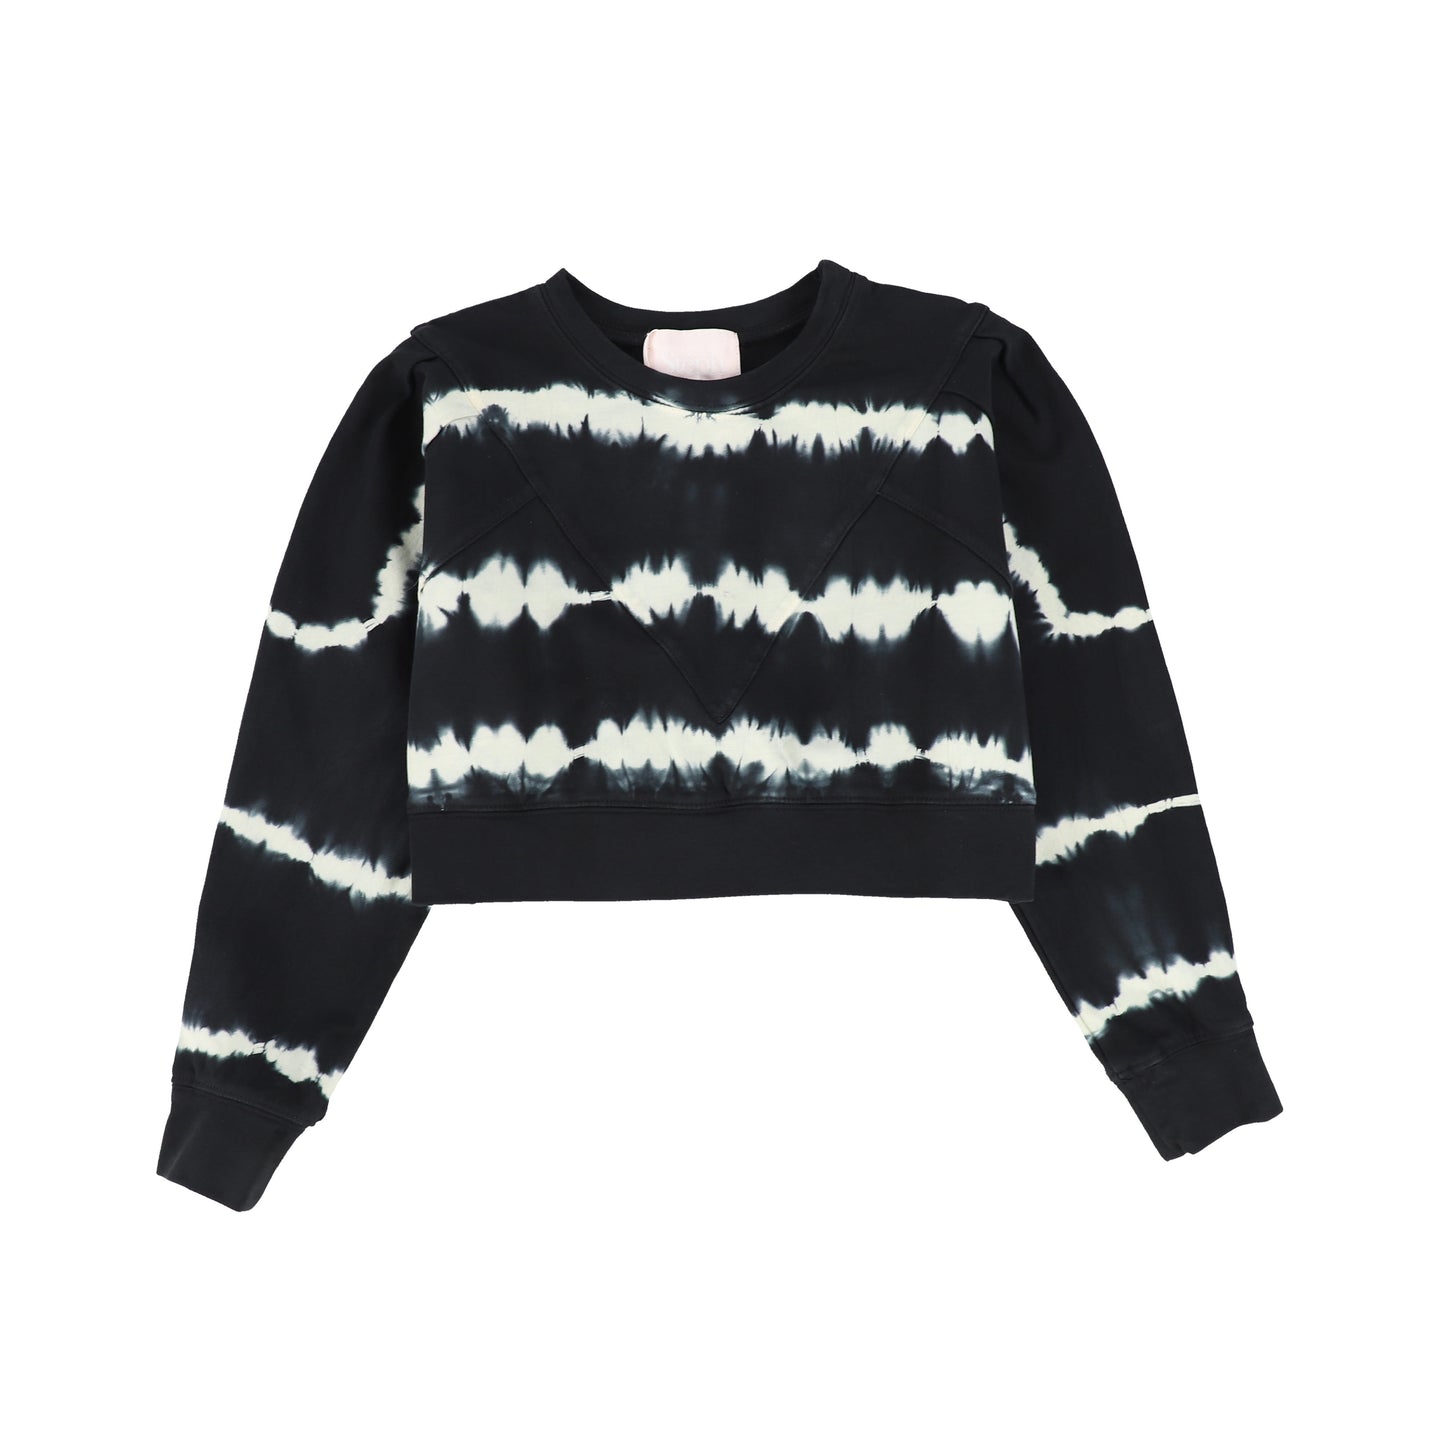 Steph The Label Black Tie Dye Oversize Sweatshirt [Final Sale]